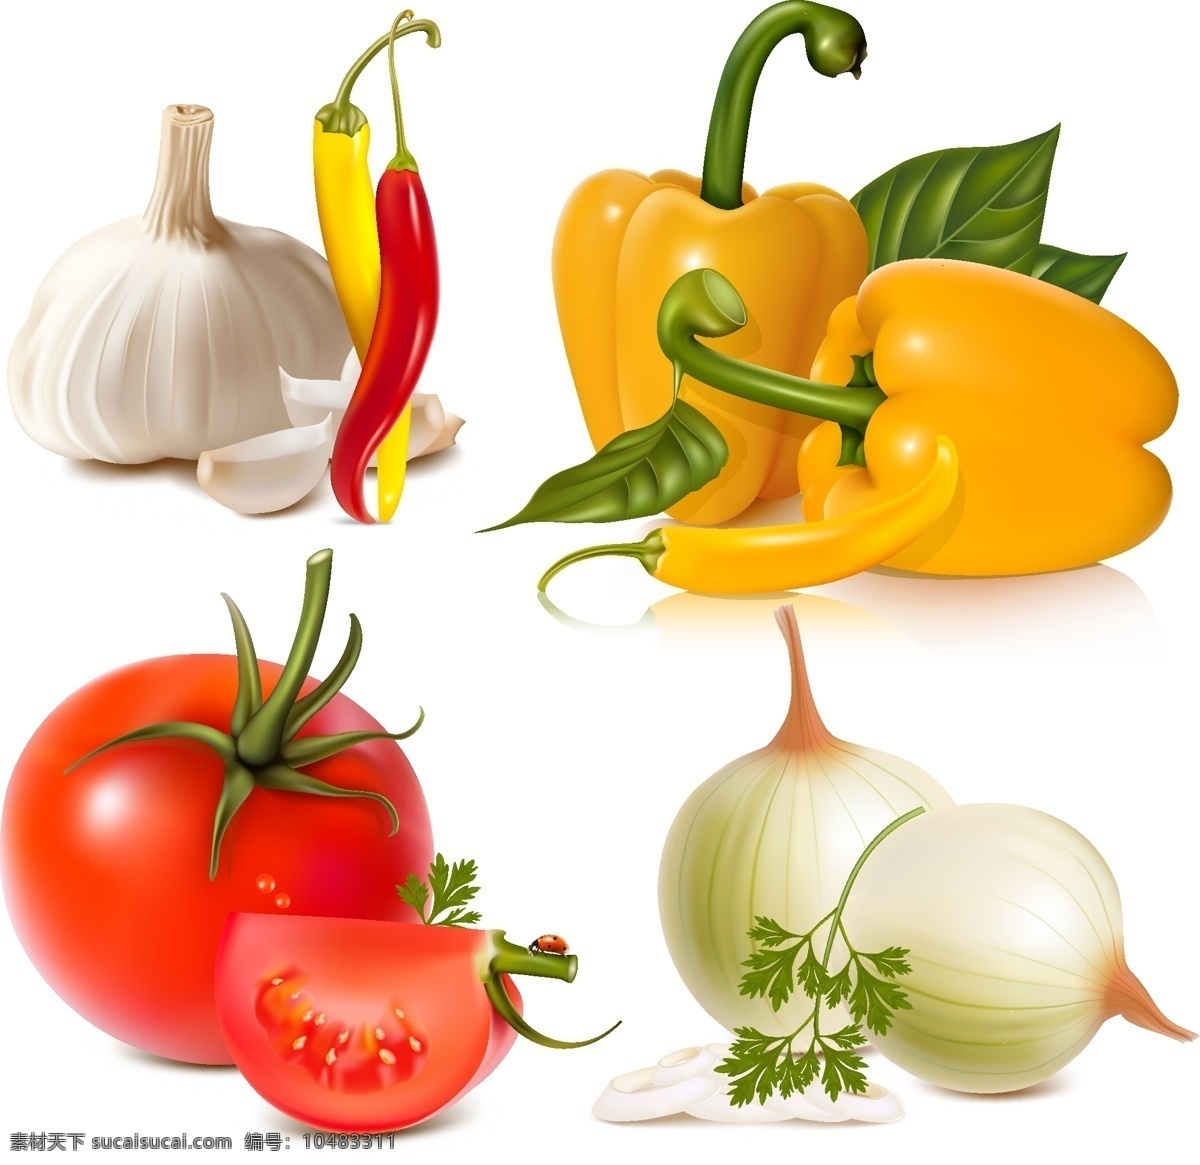 蔬菜 图像 矢量 大蒜 辣椒 洋葱 西红柿的叶子 矢量图 日常生活